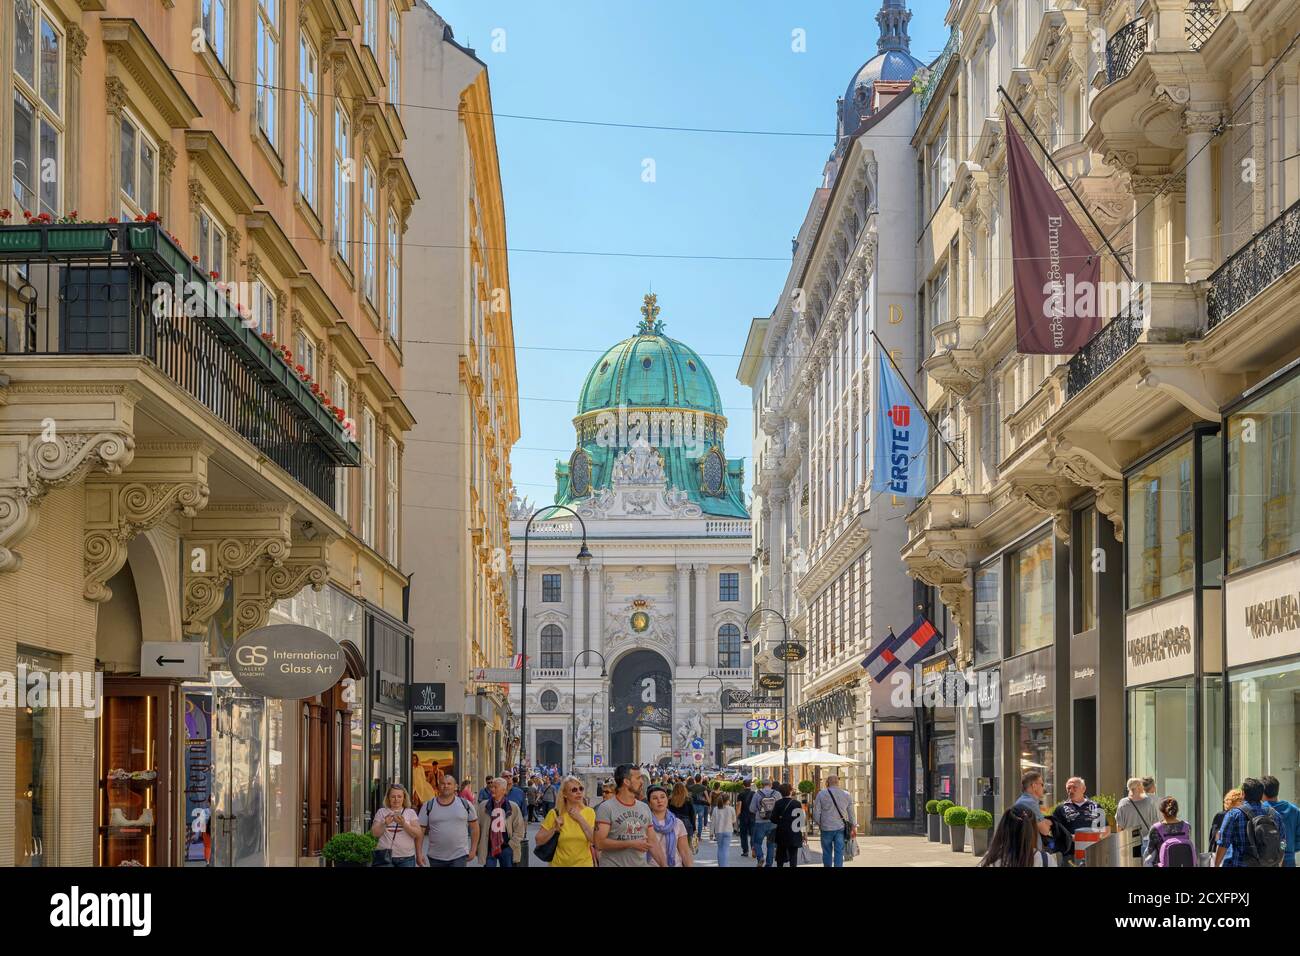 Vienne, Autriche - 18 mai 2019 : vue d'horizon de la ville de Vienne Autriche à Graben et rue commerçante Kohlmarkt Banque D'Images